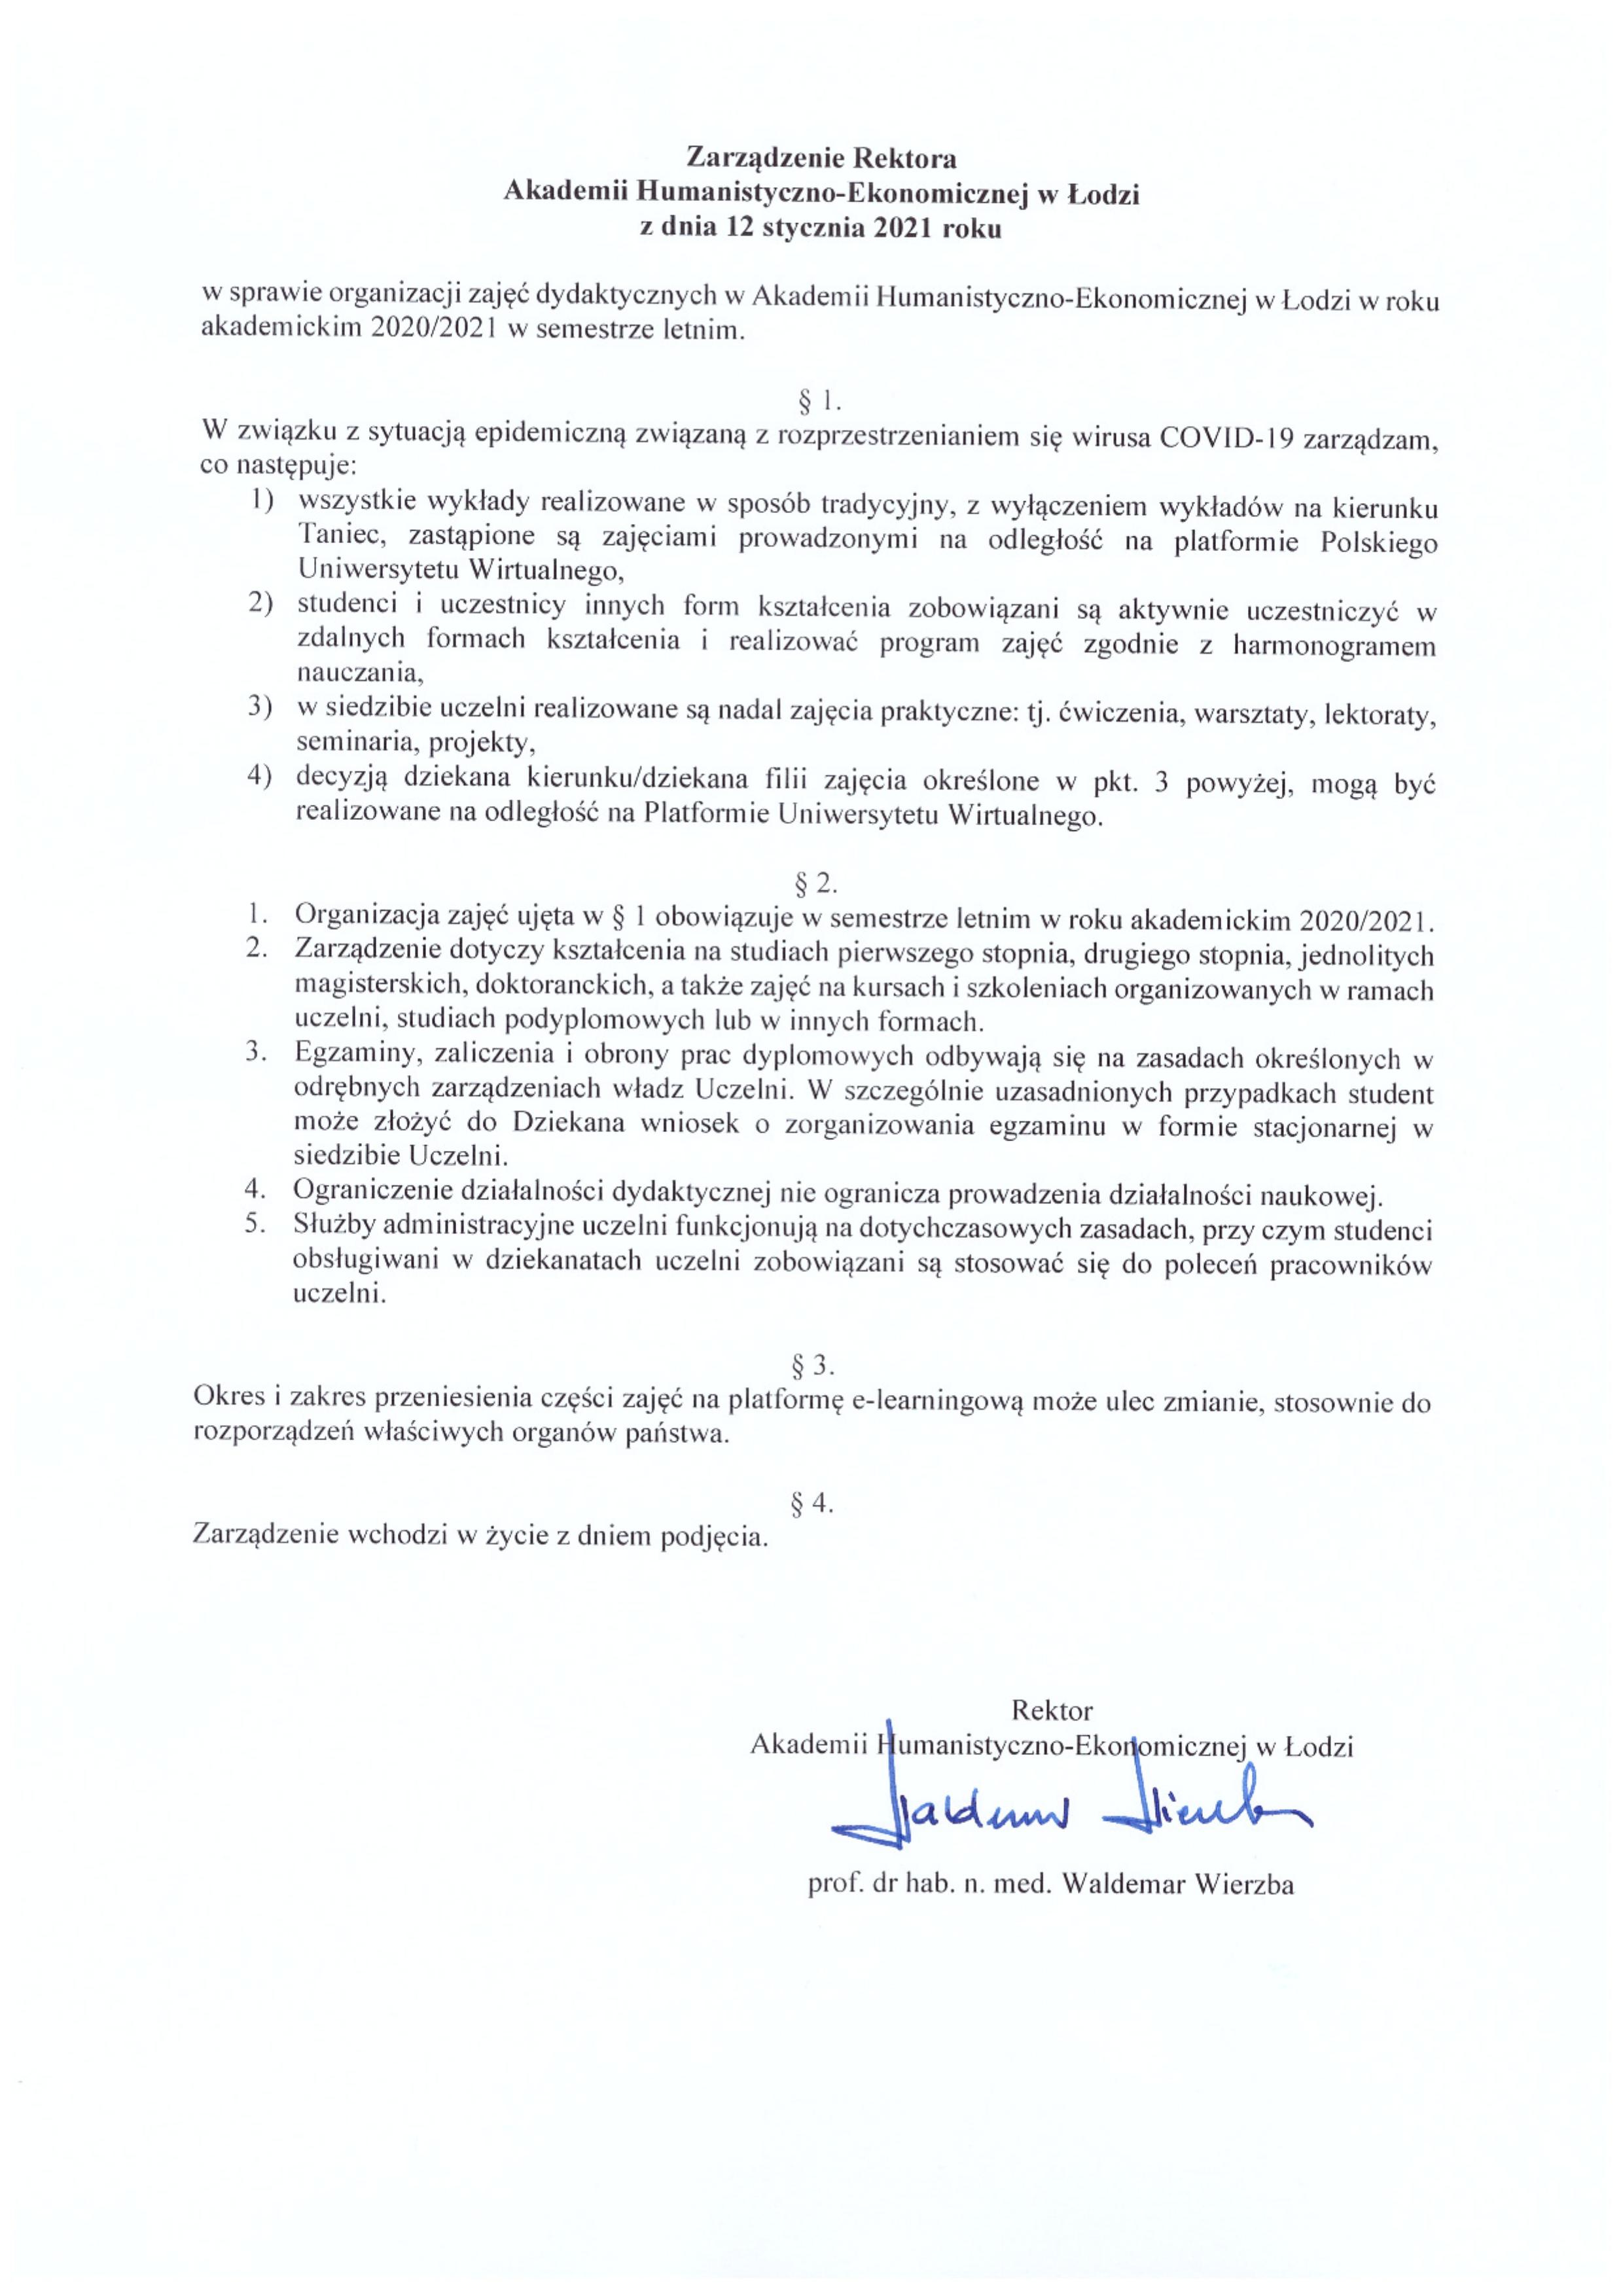 Zarządzenia Rektora dot. sesji i organizacji zajęć dydaktycznych